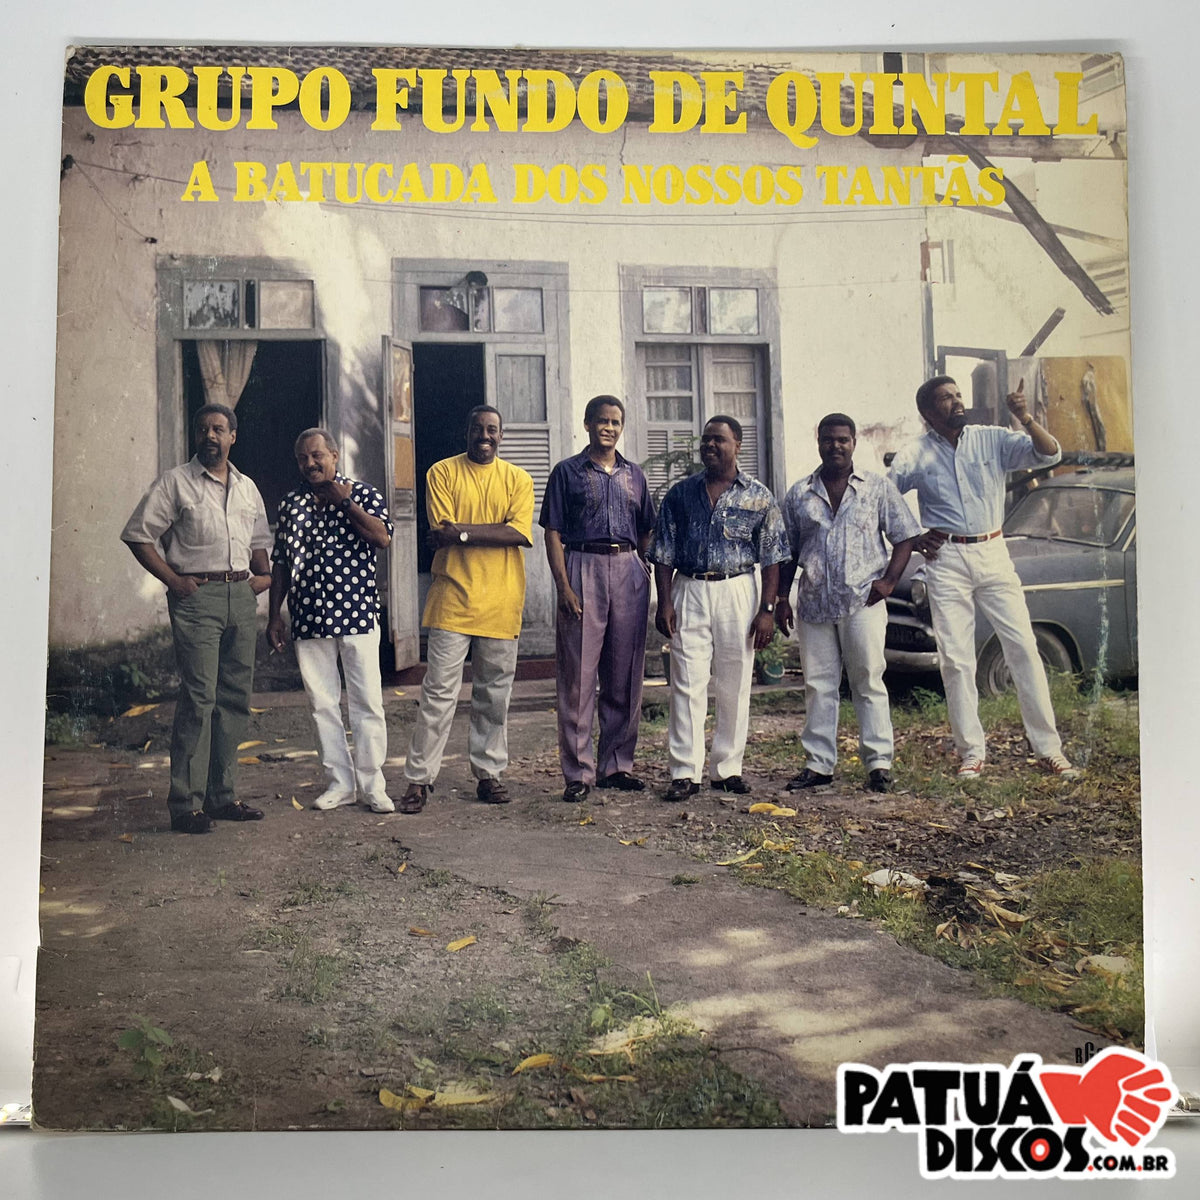 Grupo Fundo De Quintal - A Batucada dos Nossos Tantãs: listen with lyrics